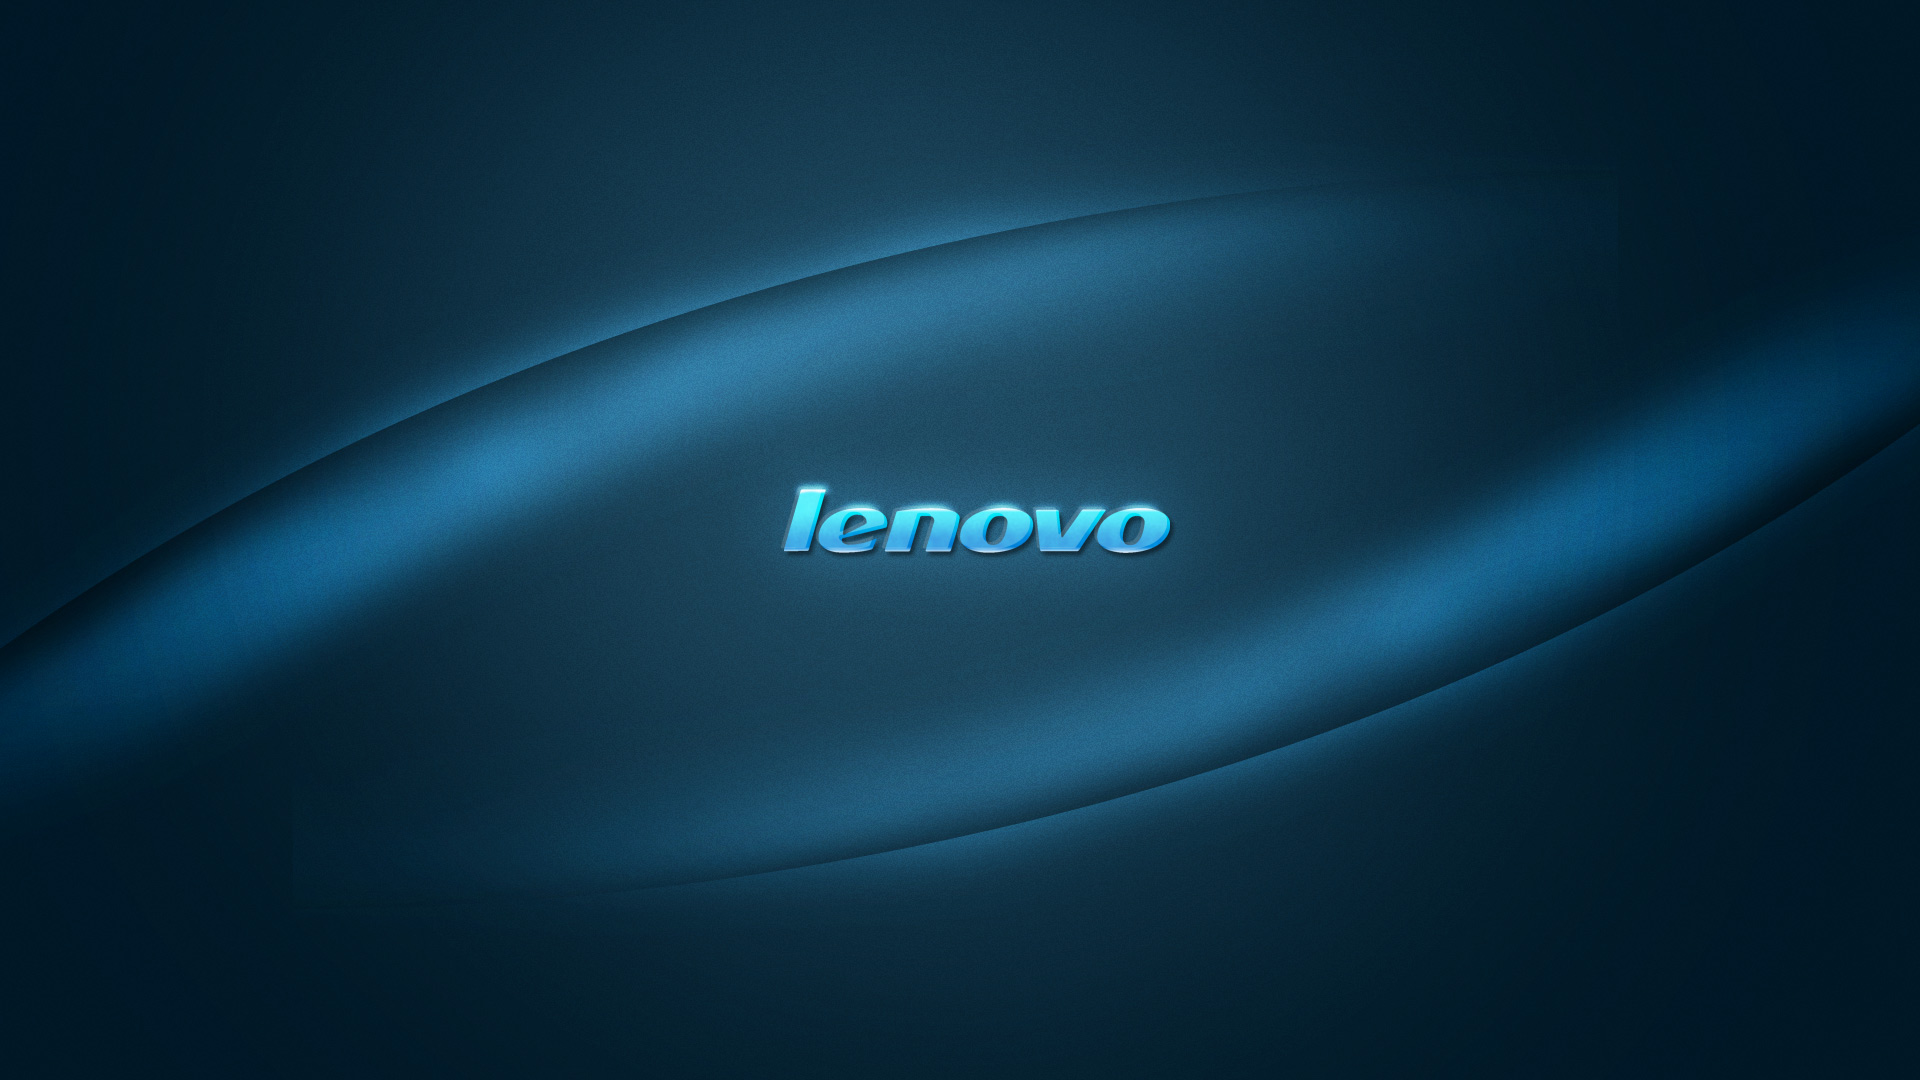 Ibm Lenovo Wallpaper Lenovo Wallpapers 1